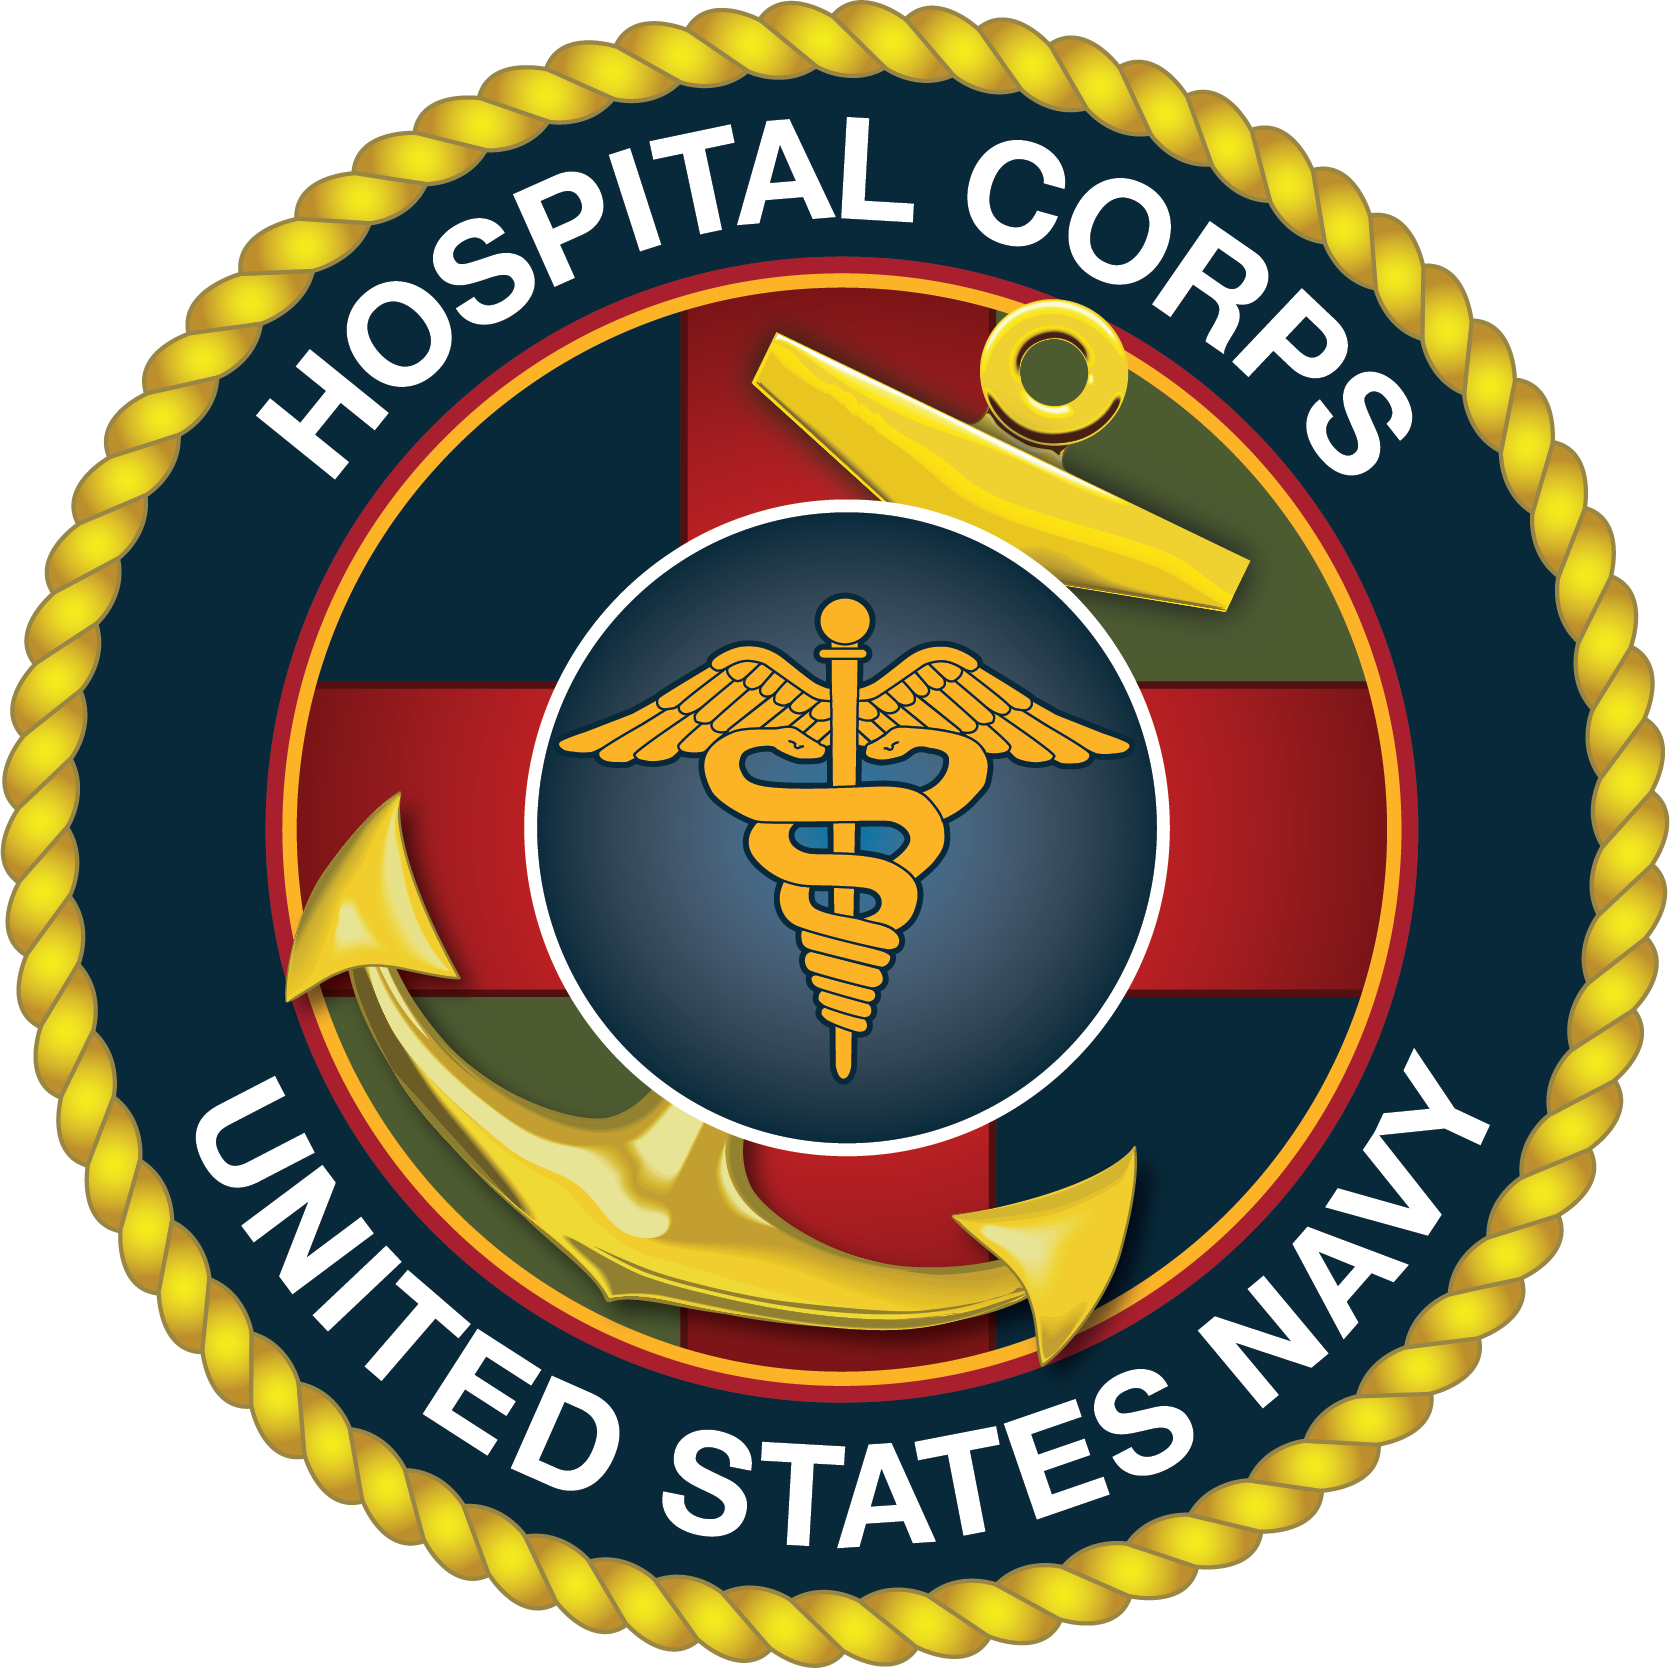 Hospital Corps